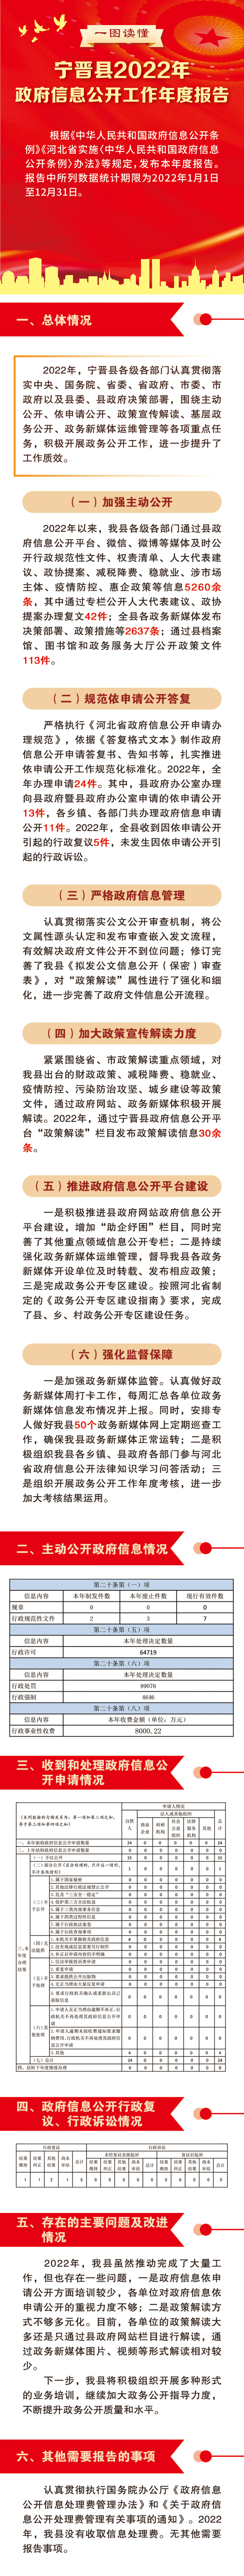 一图读懂 宁晋县2022年政府信息公开工作年度报告.jpg